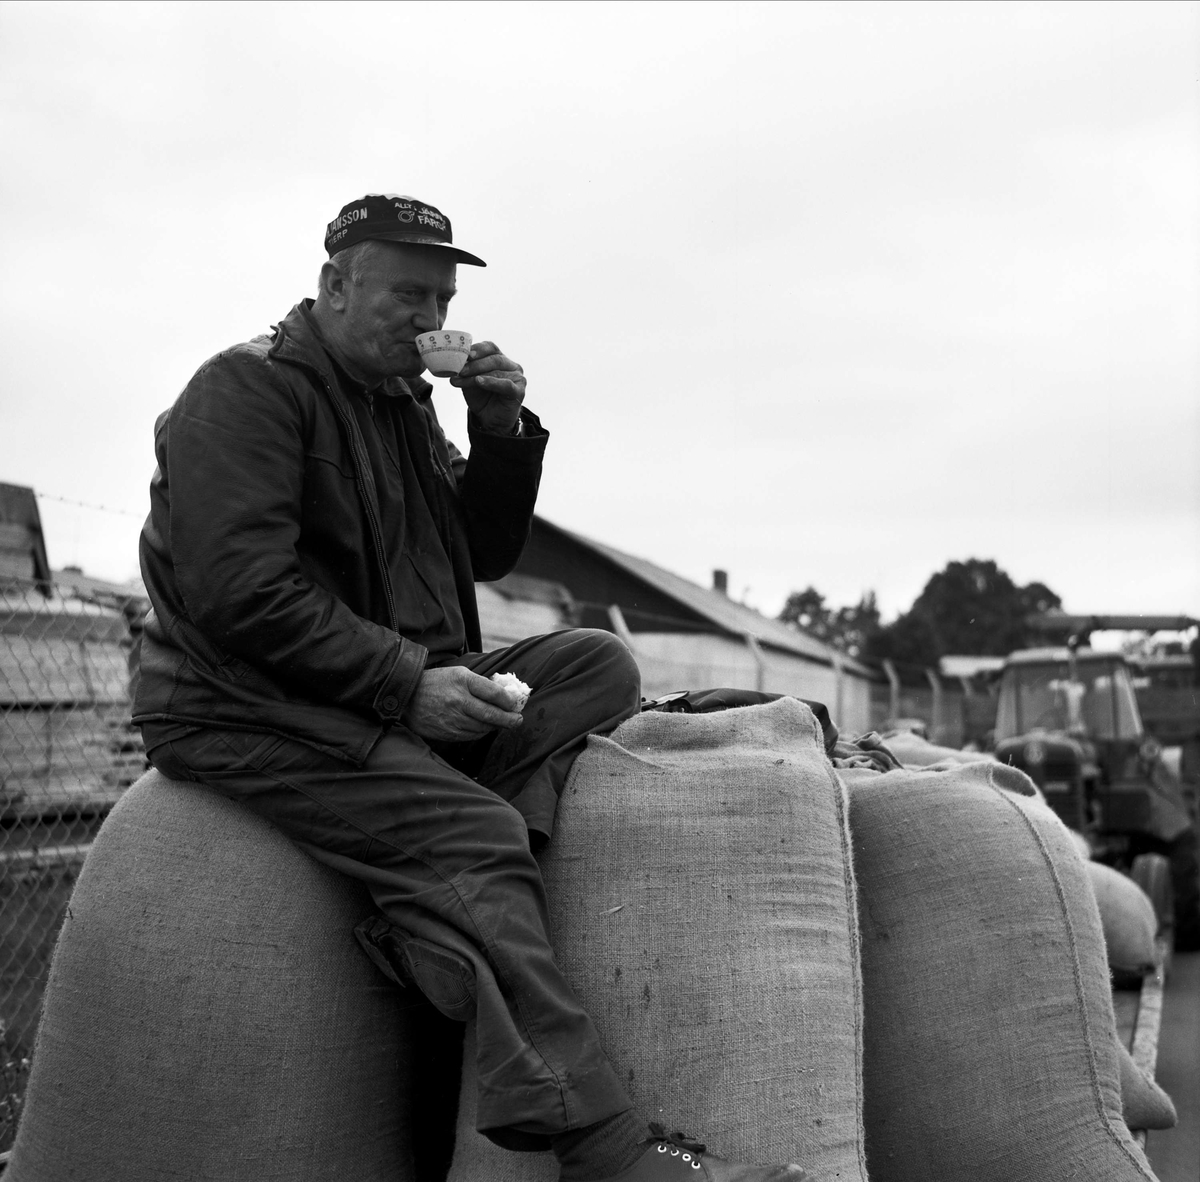 Jordbrukare tar kaffepaus sittandes på spannmålssäckar i kön till silon, Tierp, Uppland 1967